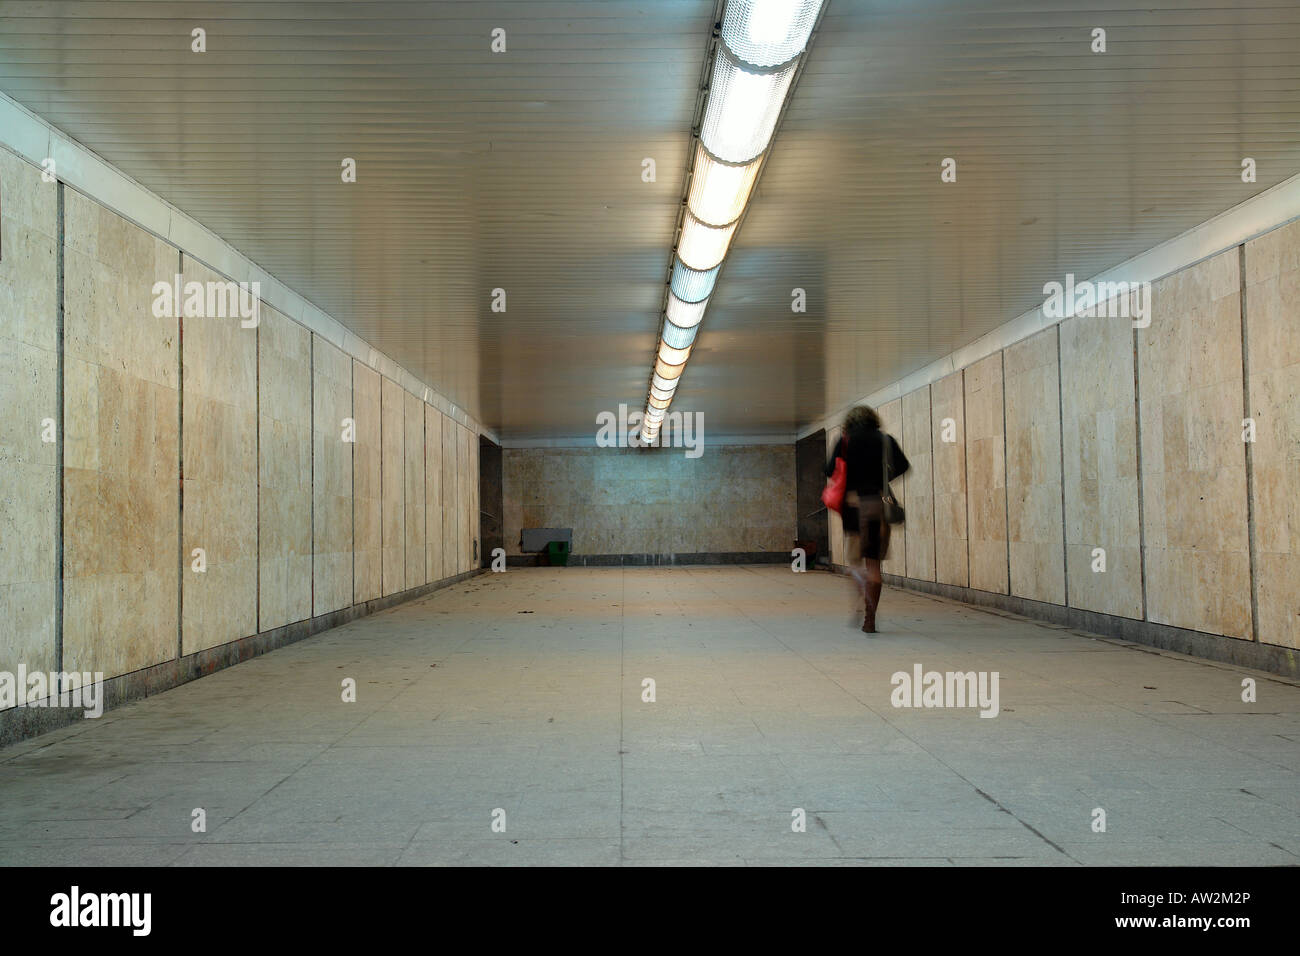 Femme avec sac rouge en passant par un passage souterrain Banque D'Images